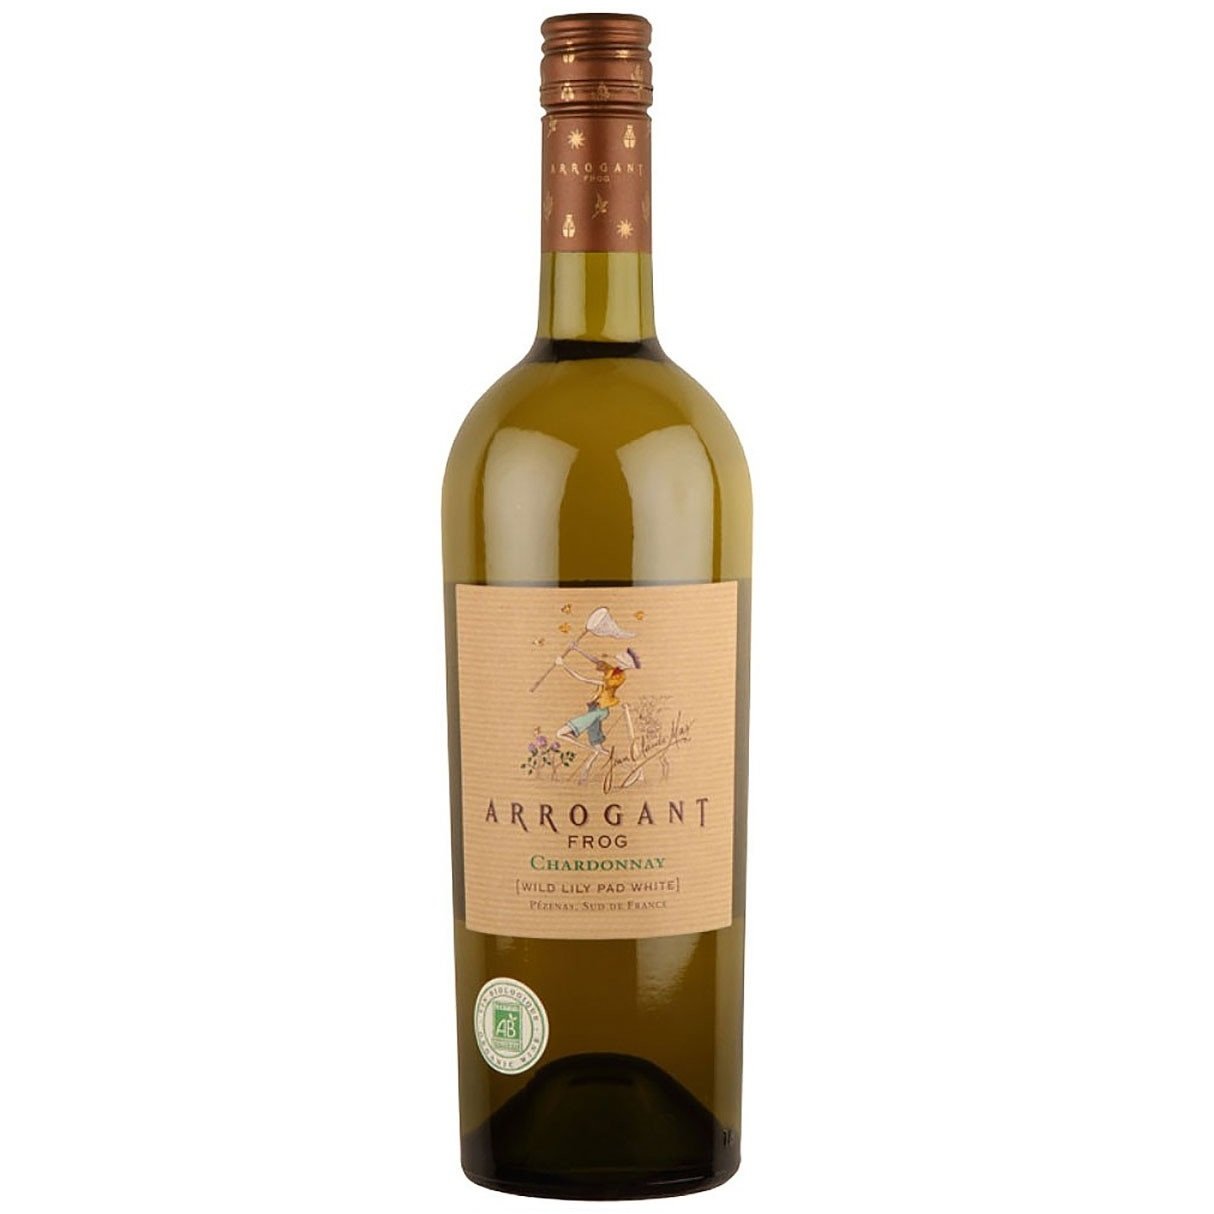 Вино Domaines Paul Mas Arrogant Frog Wild Ribet White Chardonnay, біле, сухе, 13%, 0,75 л (8000009268019) - фото 1